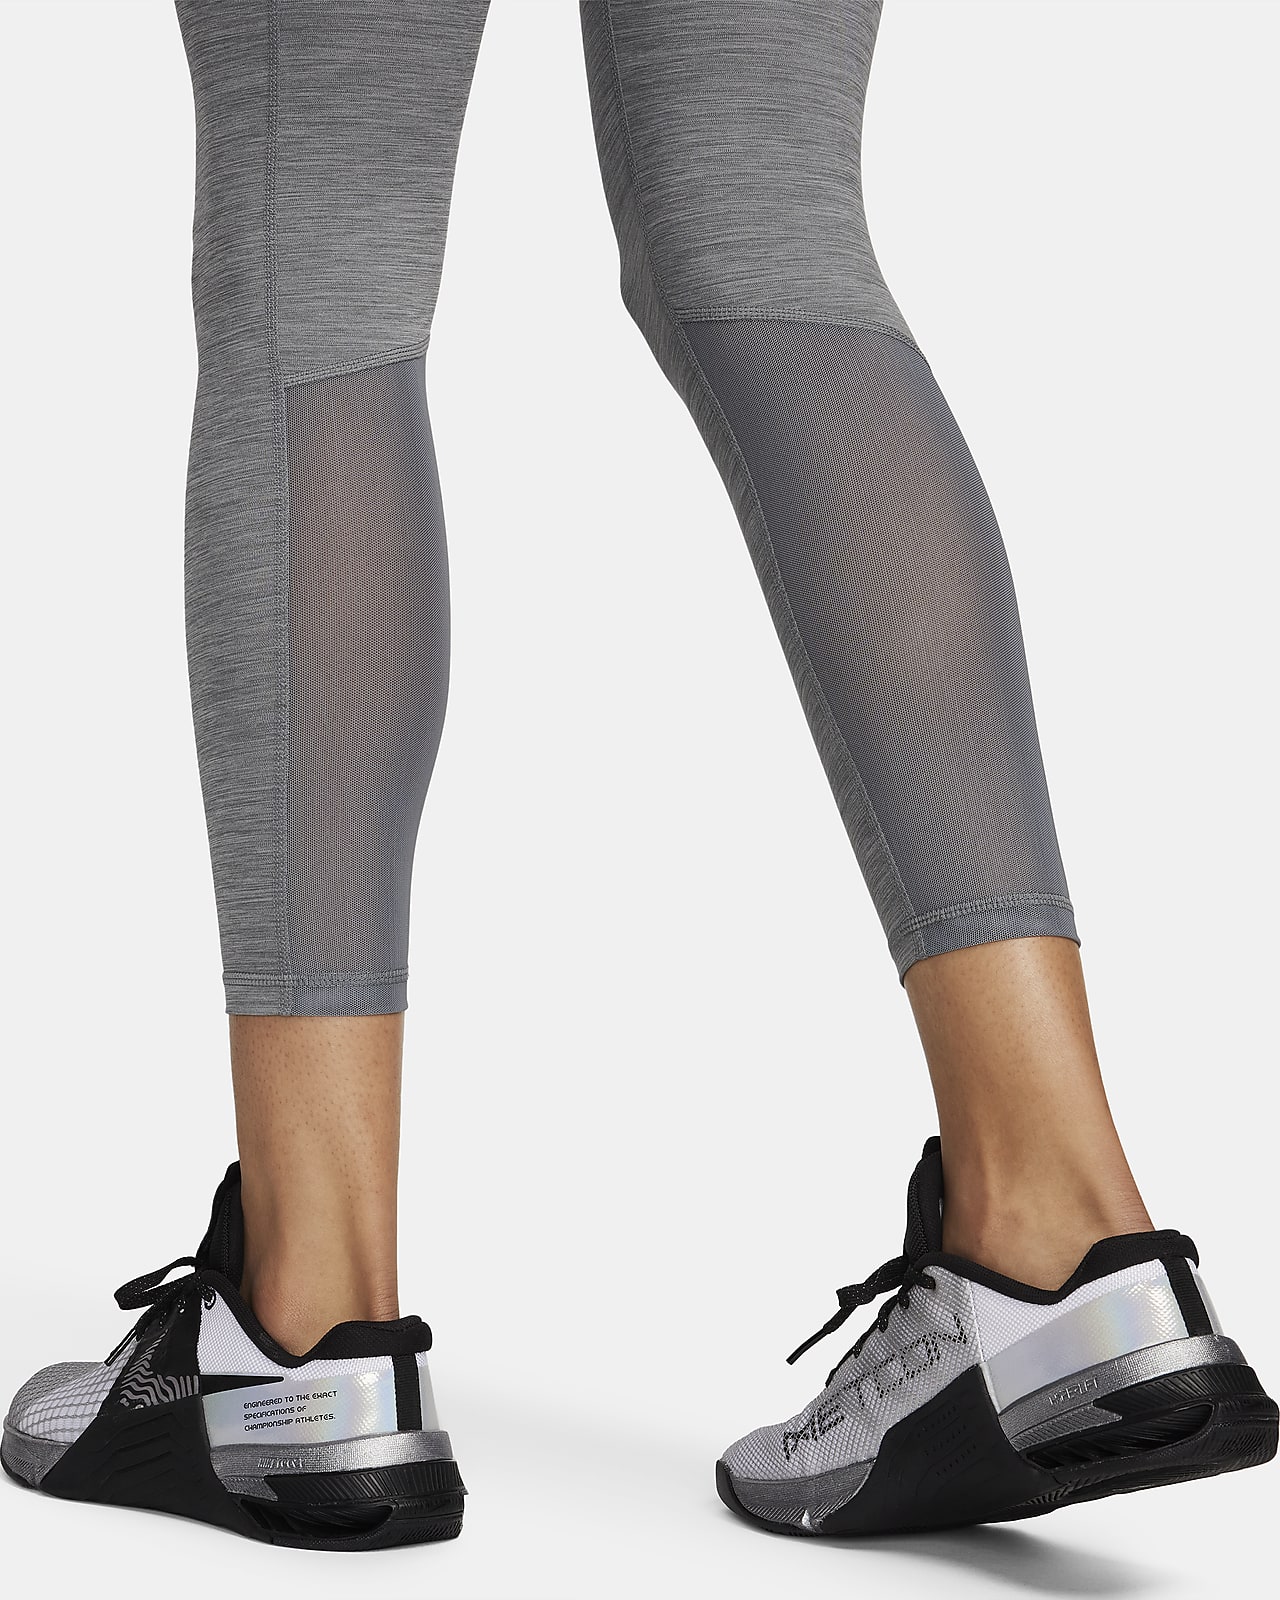 Nike Pro 365 Kadın Kahverengi Günlük Stil Tayt DA0483-222